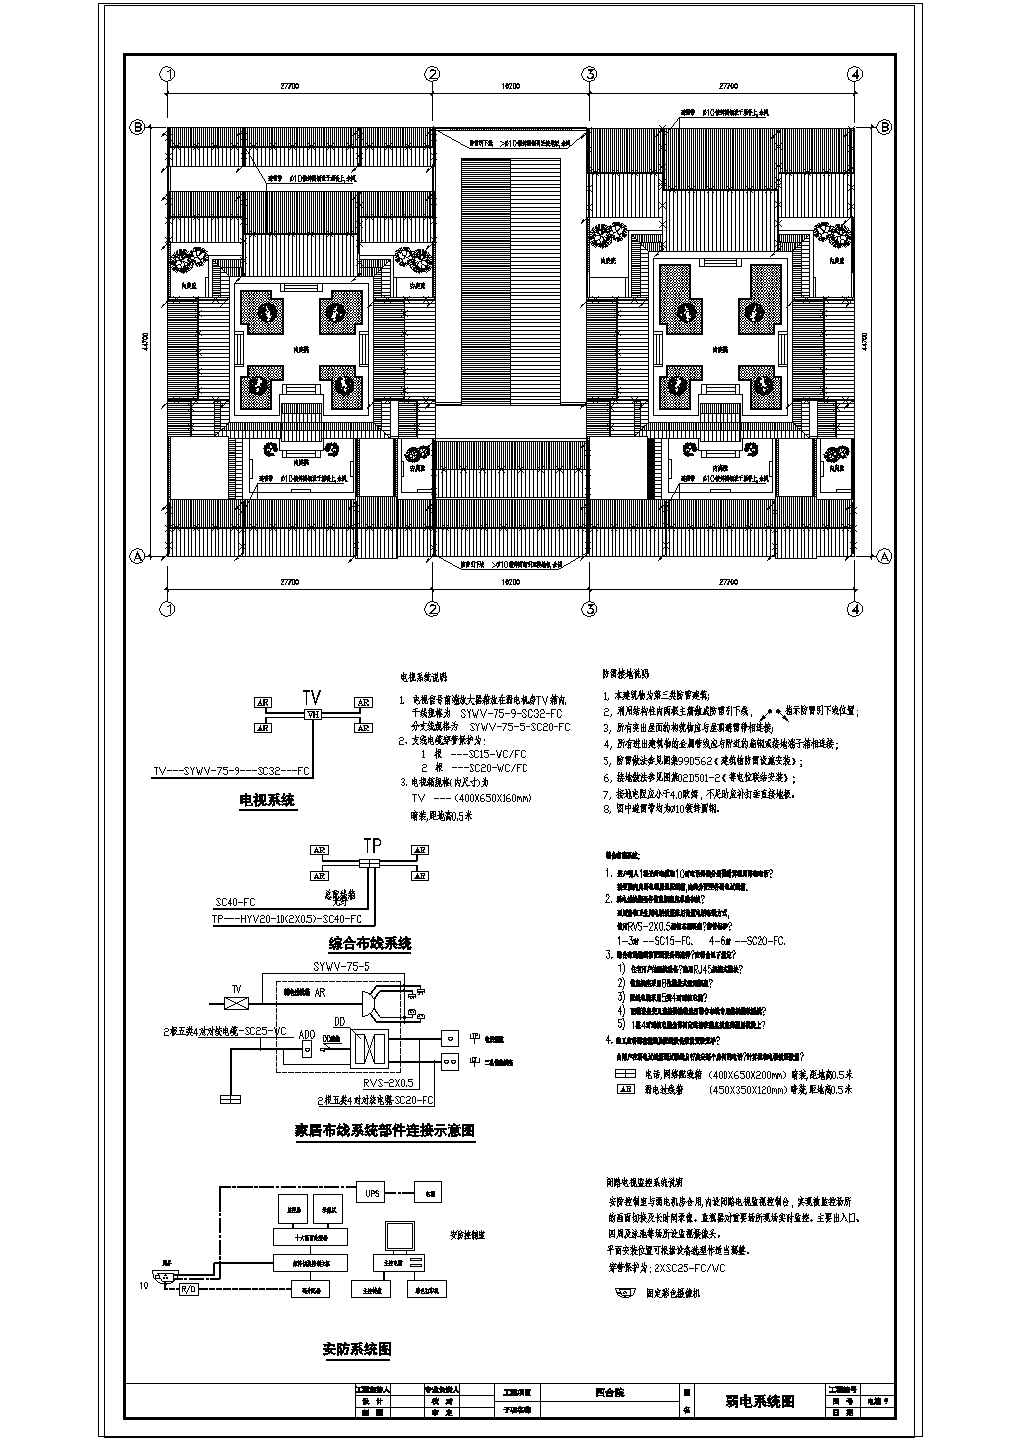 中式四合院全套施工图-电气-配电